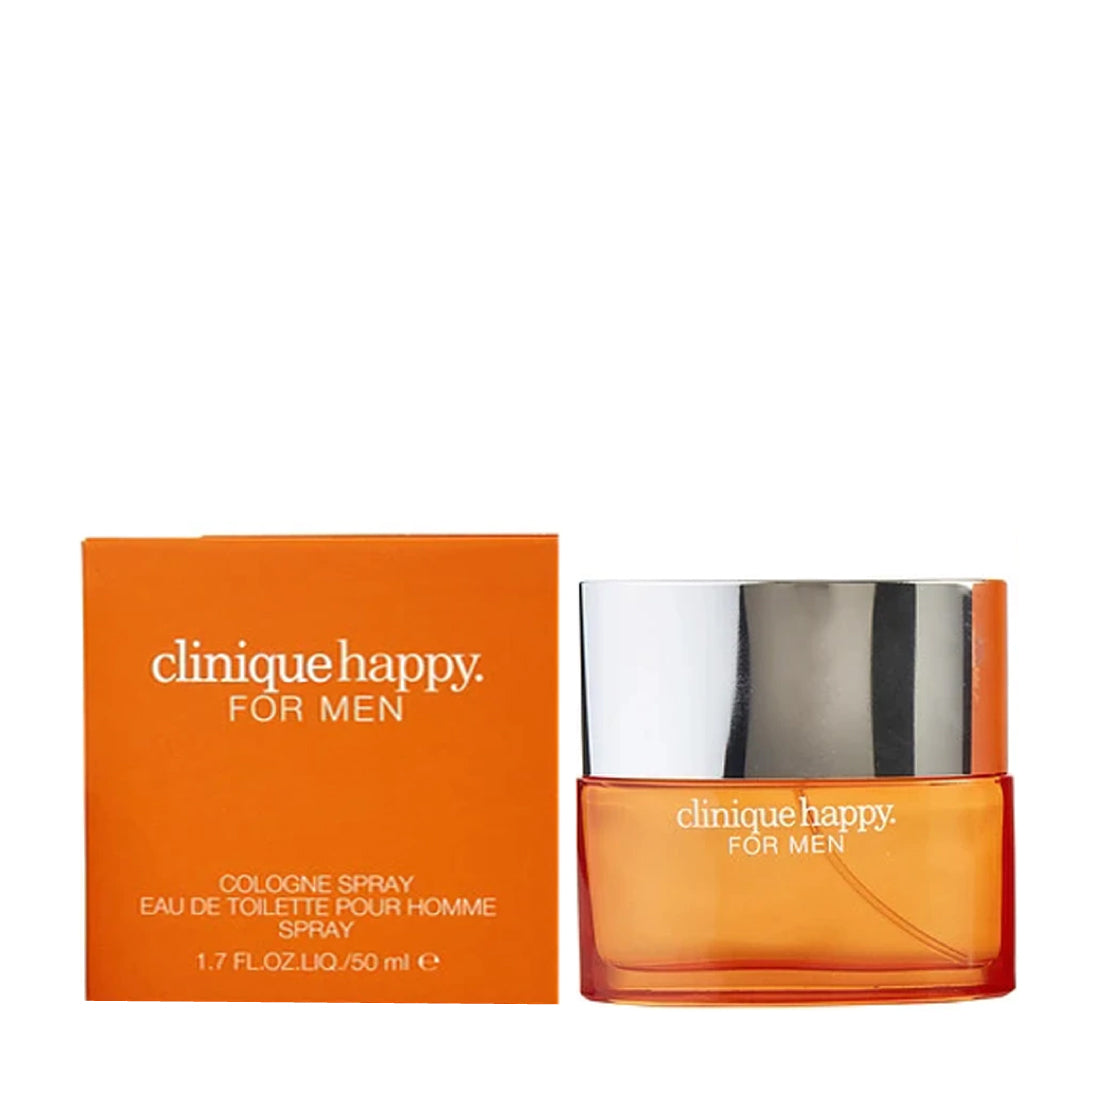 Clinique Happy Cologne for Men | PerfumePlusOutlet.com – Perfume Plus Outlet